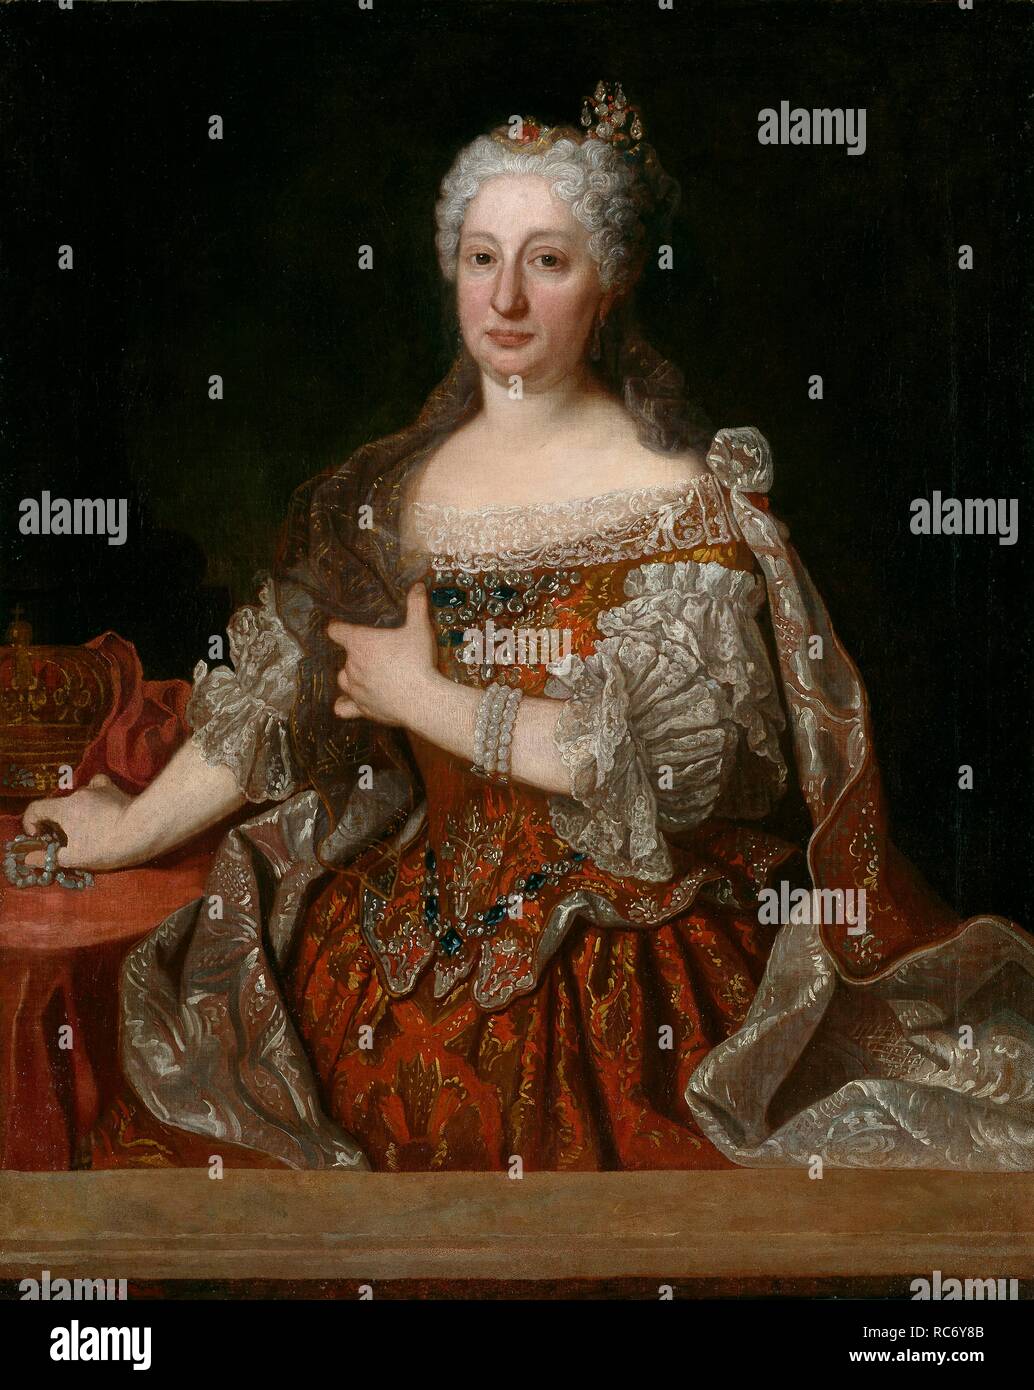 Portrait von Erzherzogin Maria Anna von Österreich (1683-1754), Königin von Portugal. Museum: Museo del Prado, Madrid. Autor: RANC, Jean. Stockfoto